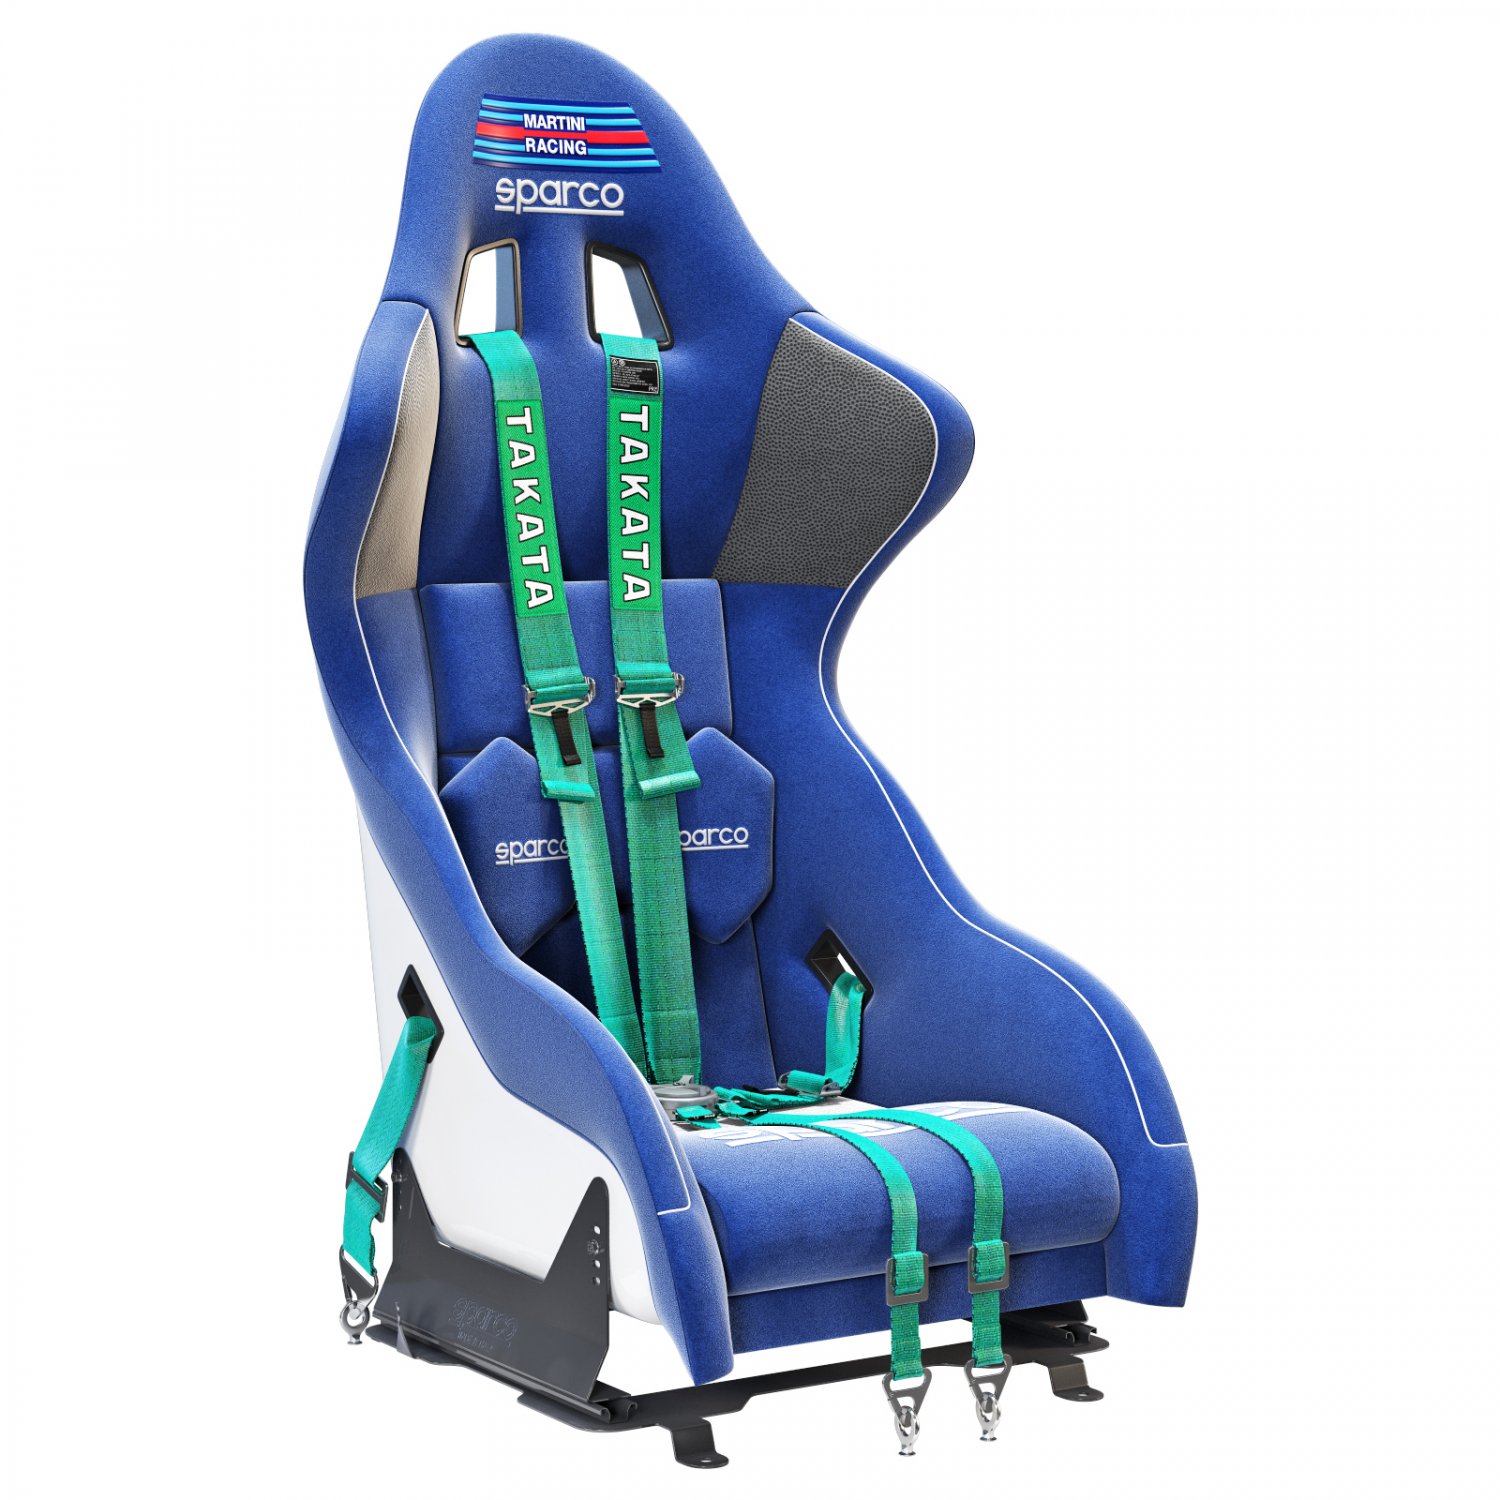 Martini Racing 3D Render